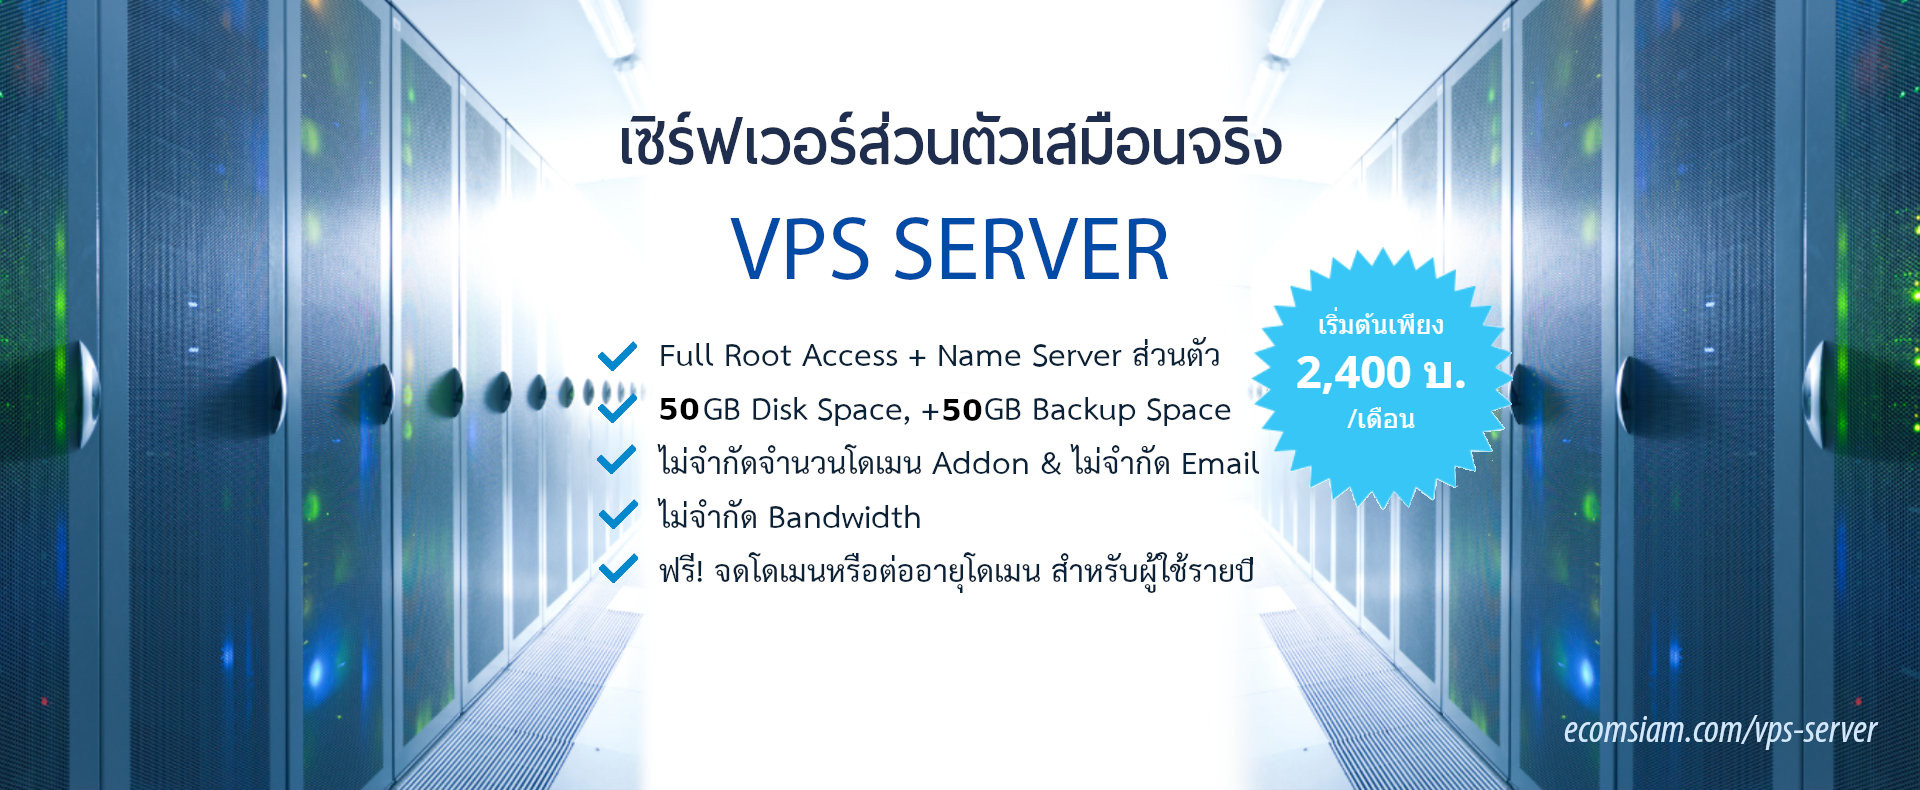 บริการ Linux VPS server ไทย VPS thailand เซิฟท์เวอร์ VPS Web Hosting thai ตั้งอยู่ในไทย vps หรือ Versual Private Server (vPS) เซิร์ฟเวอร์ส่วนตัวเสมือนจริง ระบบควบคุมจัดการ Web hosting ที่ง่าย สะดวกด้วย cPanel WHM Control Panel,PRIVATE Name Servers,FULL Root Access สามารถเข้าใช้งานโดยใช้สิทธิ Root VPS server ไม่จำกัดโดเมน,ไม่จำกัดอีเมล์,ฟรี โดเมนเนม